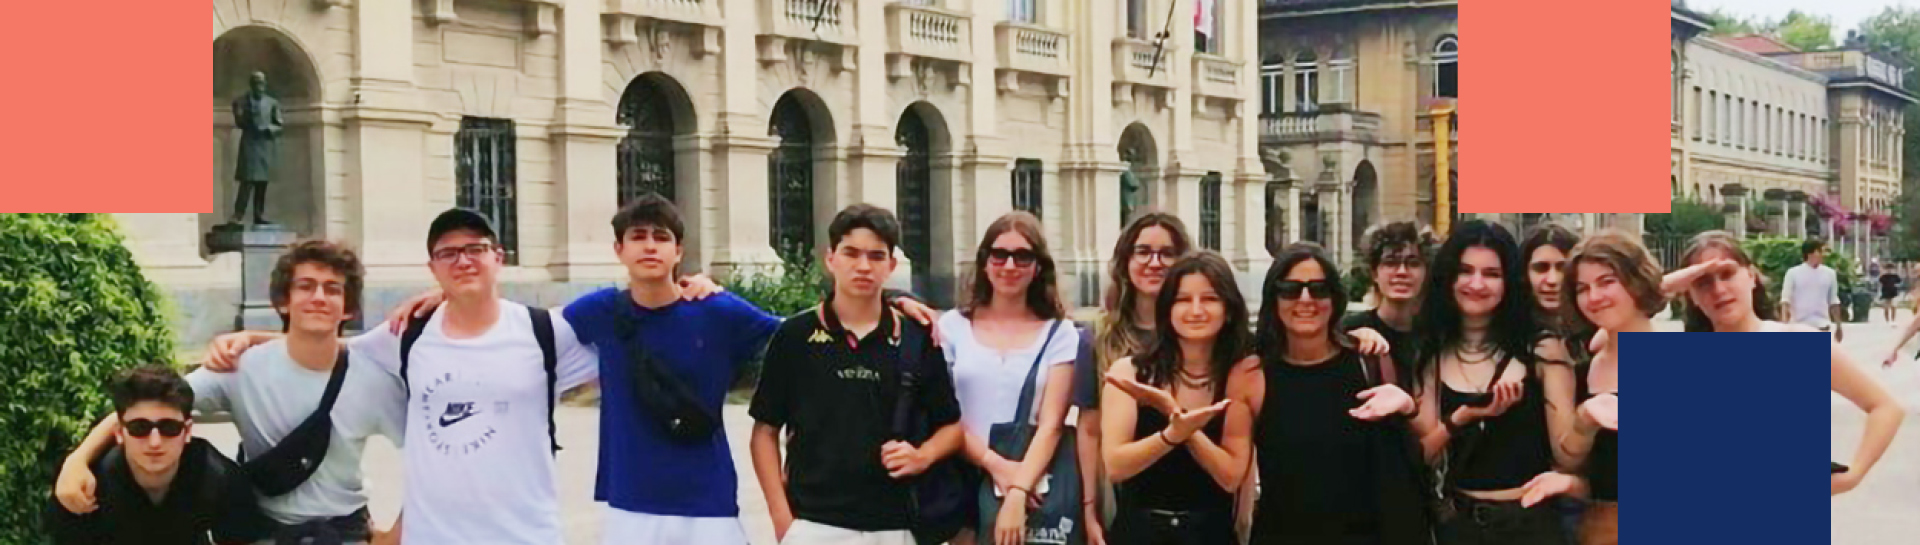 Grupo de estudiantes extranjeros frente a la Universidad Politécnica de Milán